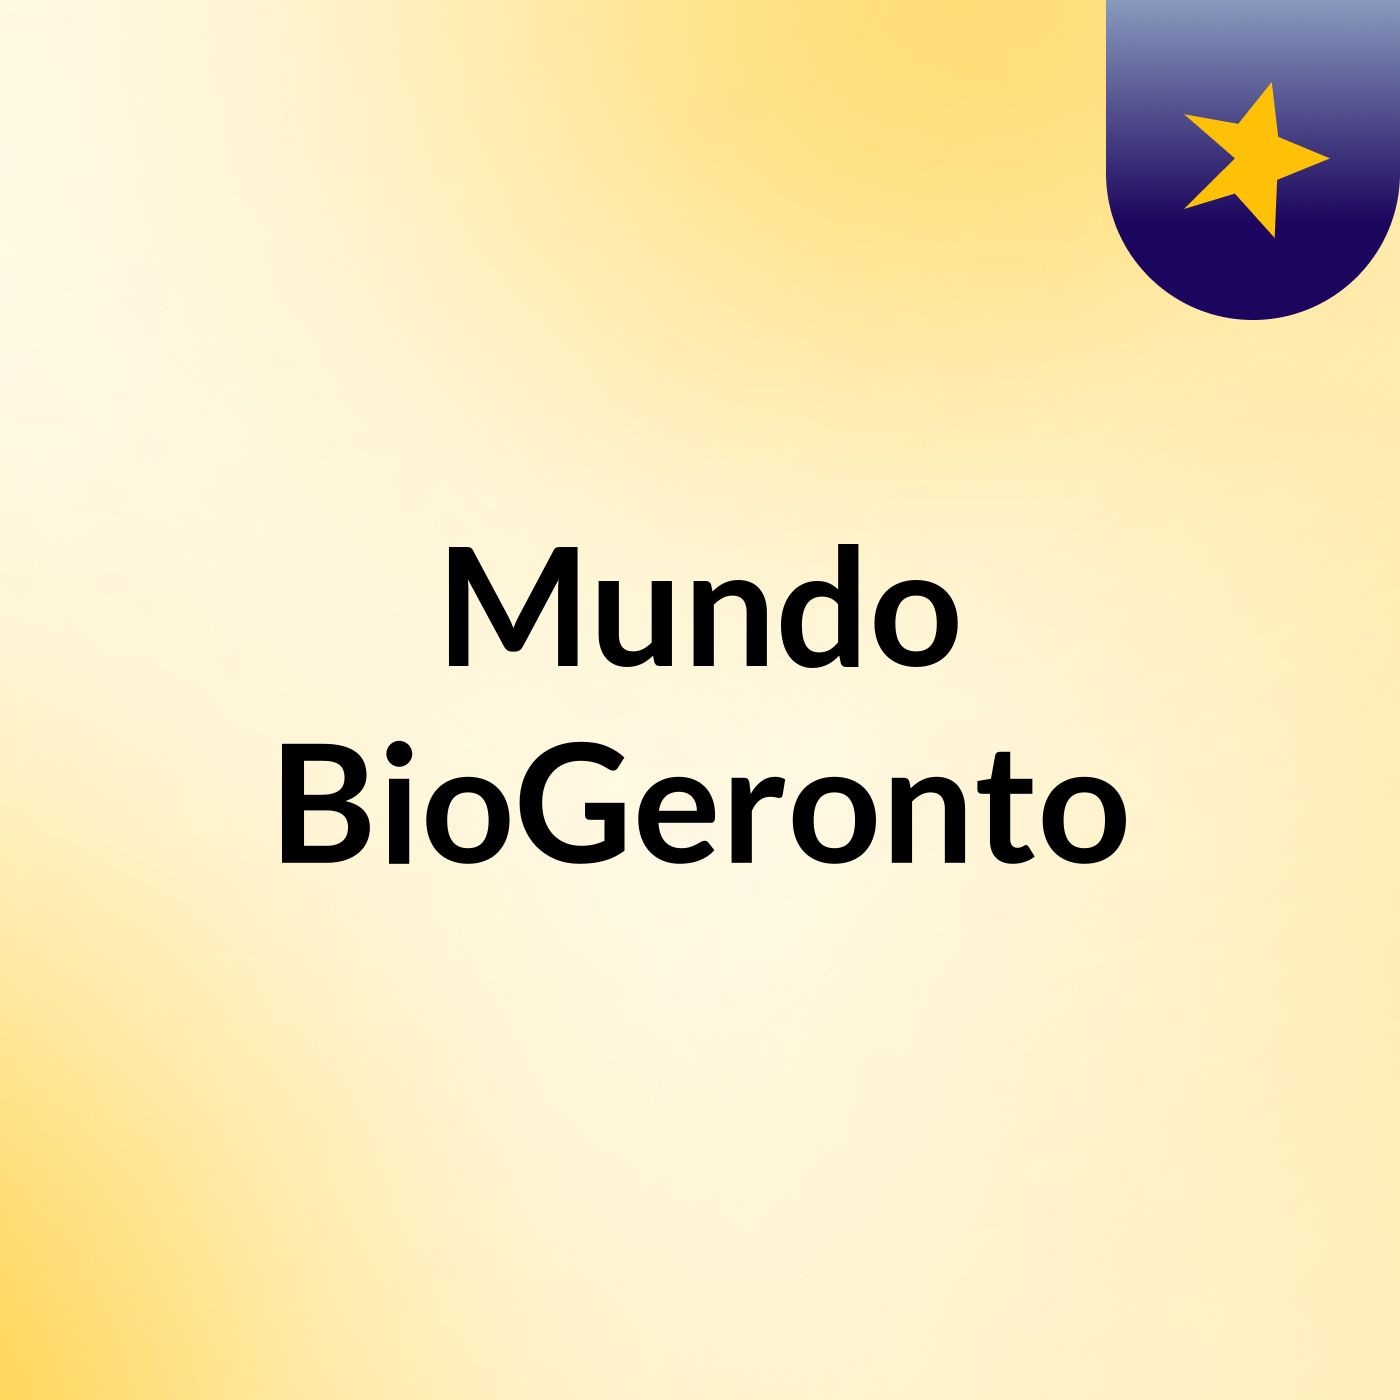 Mundo BioGeronto